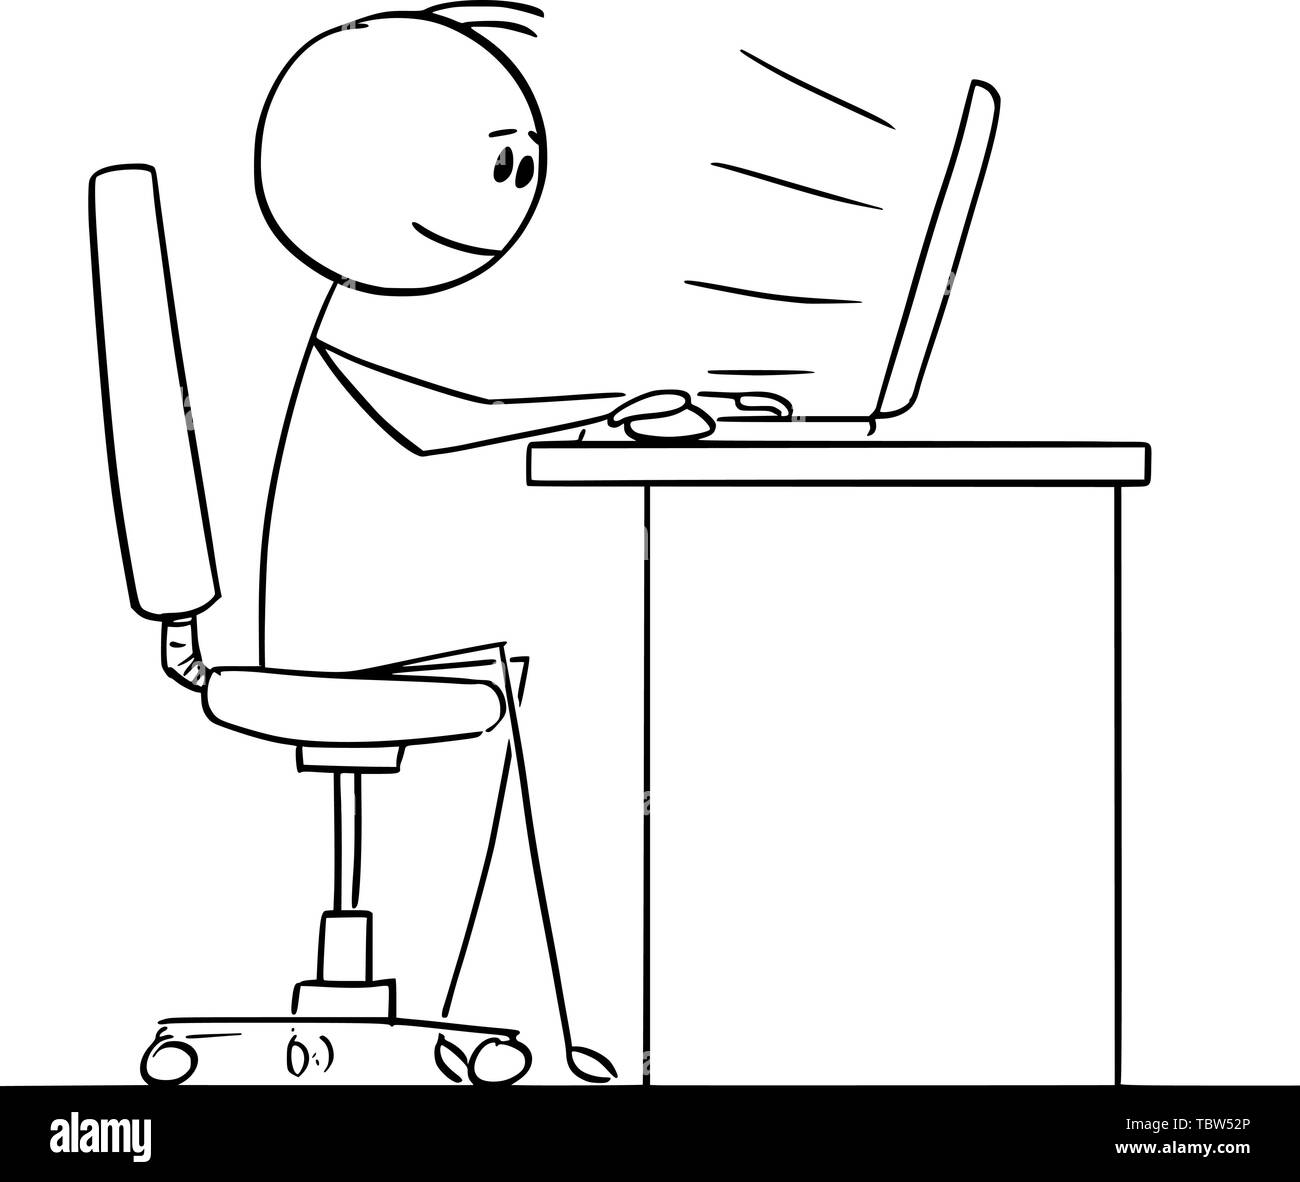 Vector cartoon stick figure dessin illustration conceptuelle de l'homme ou homme assis derrière un bureau et de la saisie ou du travail sur ordinateur. Illustration de Vecteur